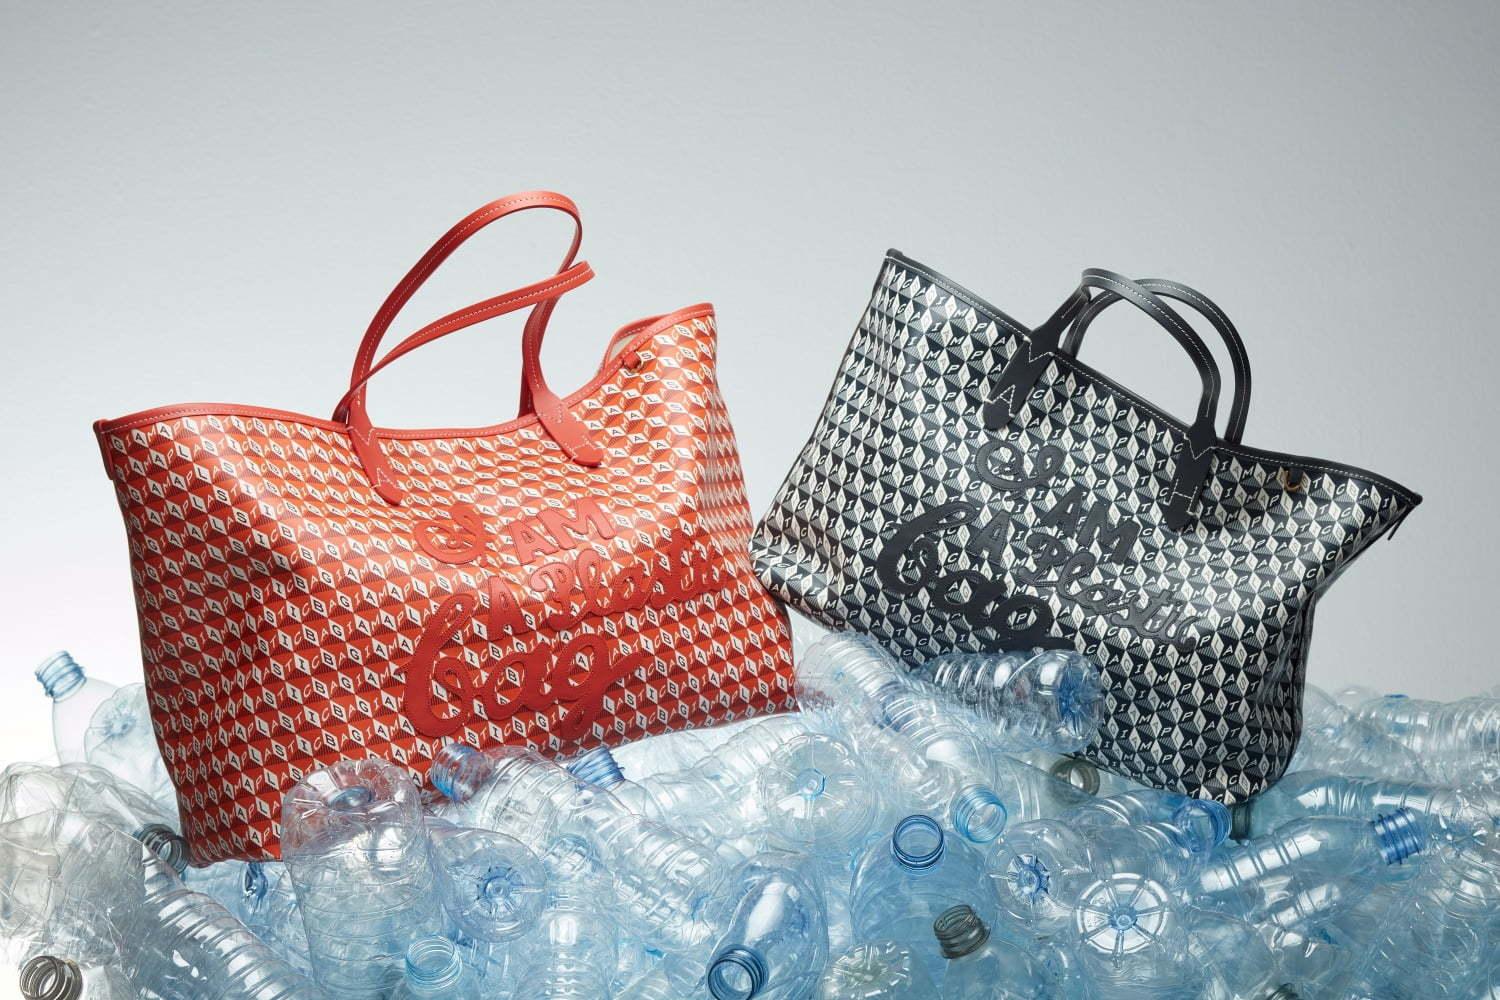 アニヤ ハインドマーチ“ペットボトル”原料の新作バッグ「I AM A Plastic Bag」発売 